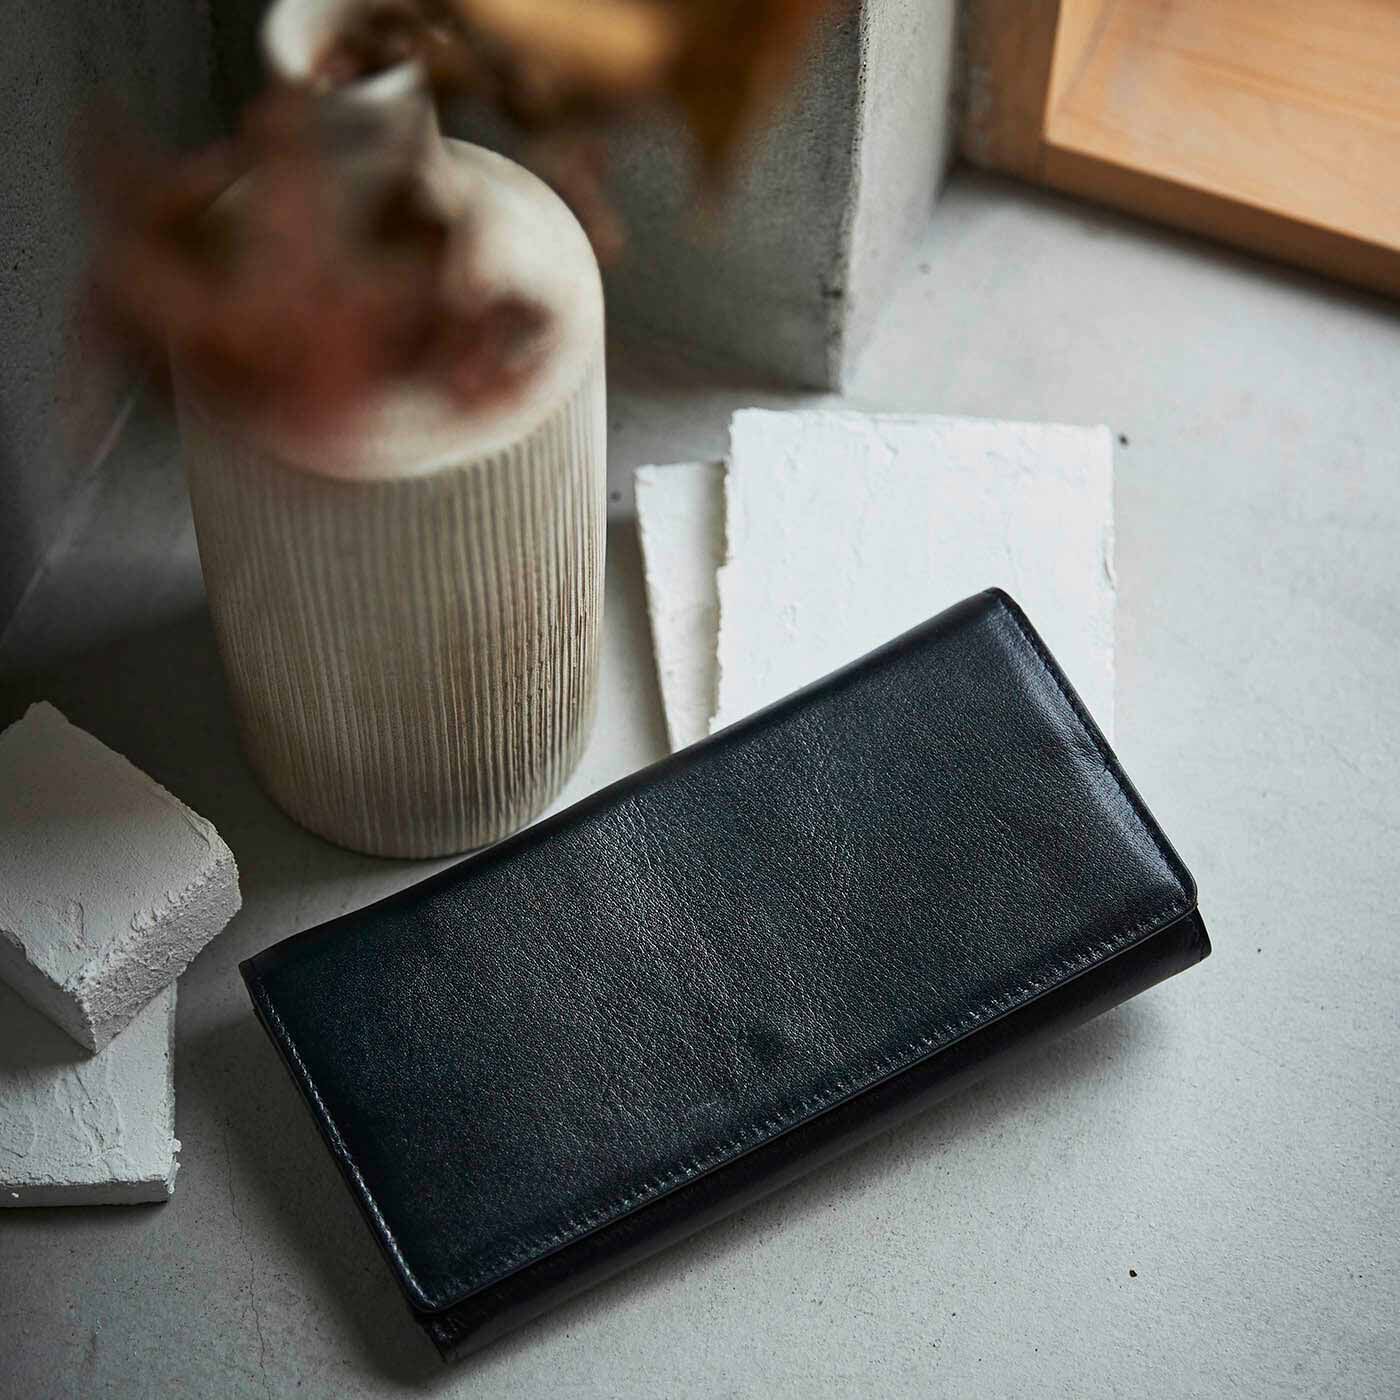 ＆Stories|財布職人と作った 職人本革のギャルソンウォレット〈ブラック〉|がばっと大きく開くギャルソン財布は、その使いやすさが支持されるロングセラー。今回は9代目となる新色モデルが登場です。